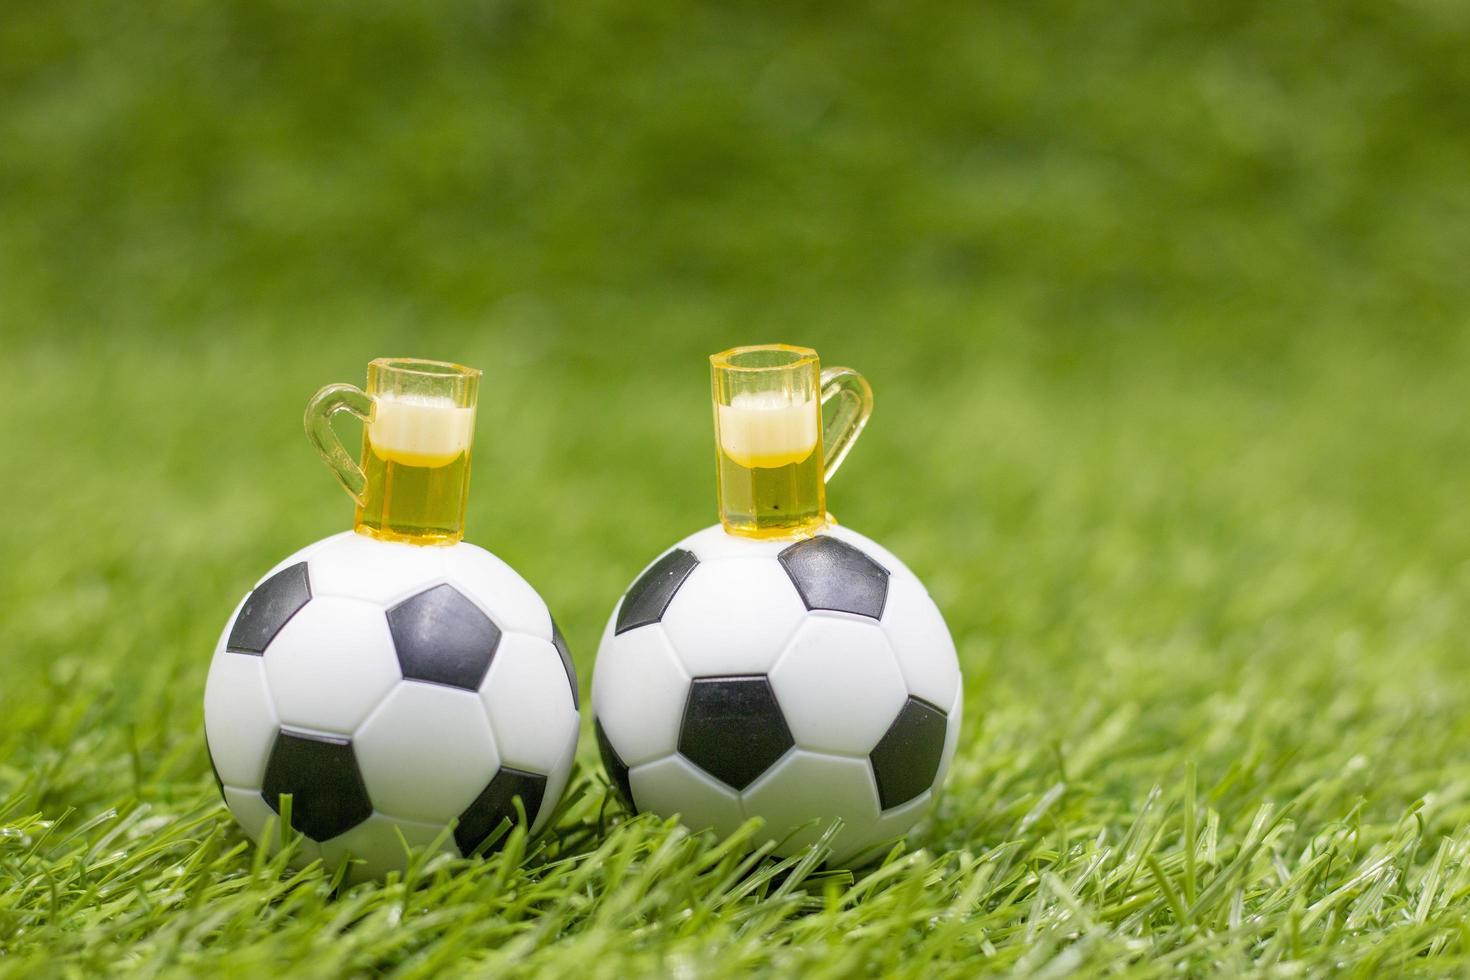 voetbal met glazen bier zijn op groen gras foto